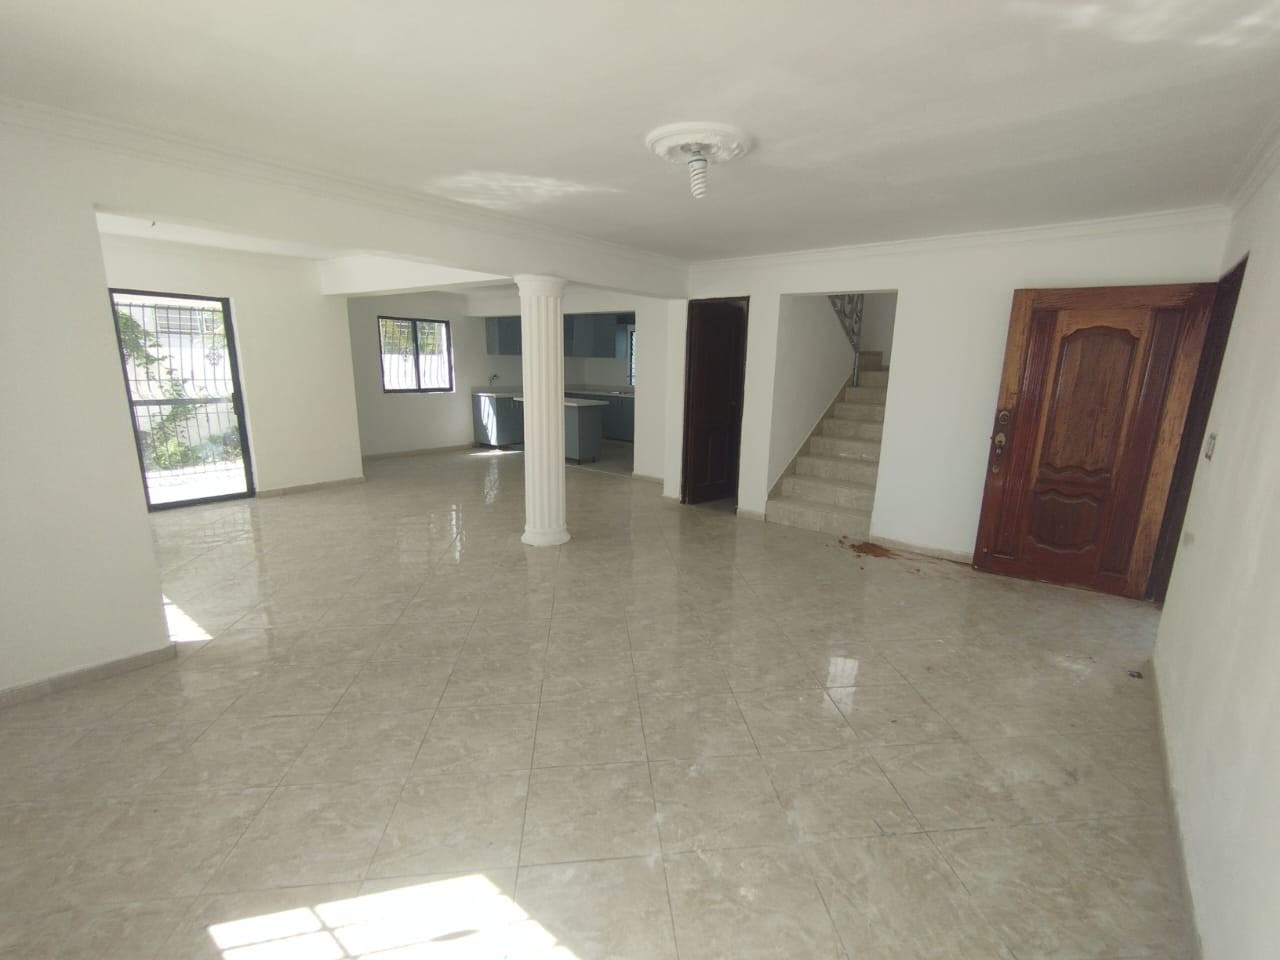 casas - Se Vende Casa en Los Rios Sector Colinas del Seminario.
200mst
RD$15,500.000 5